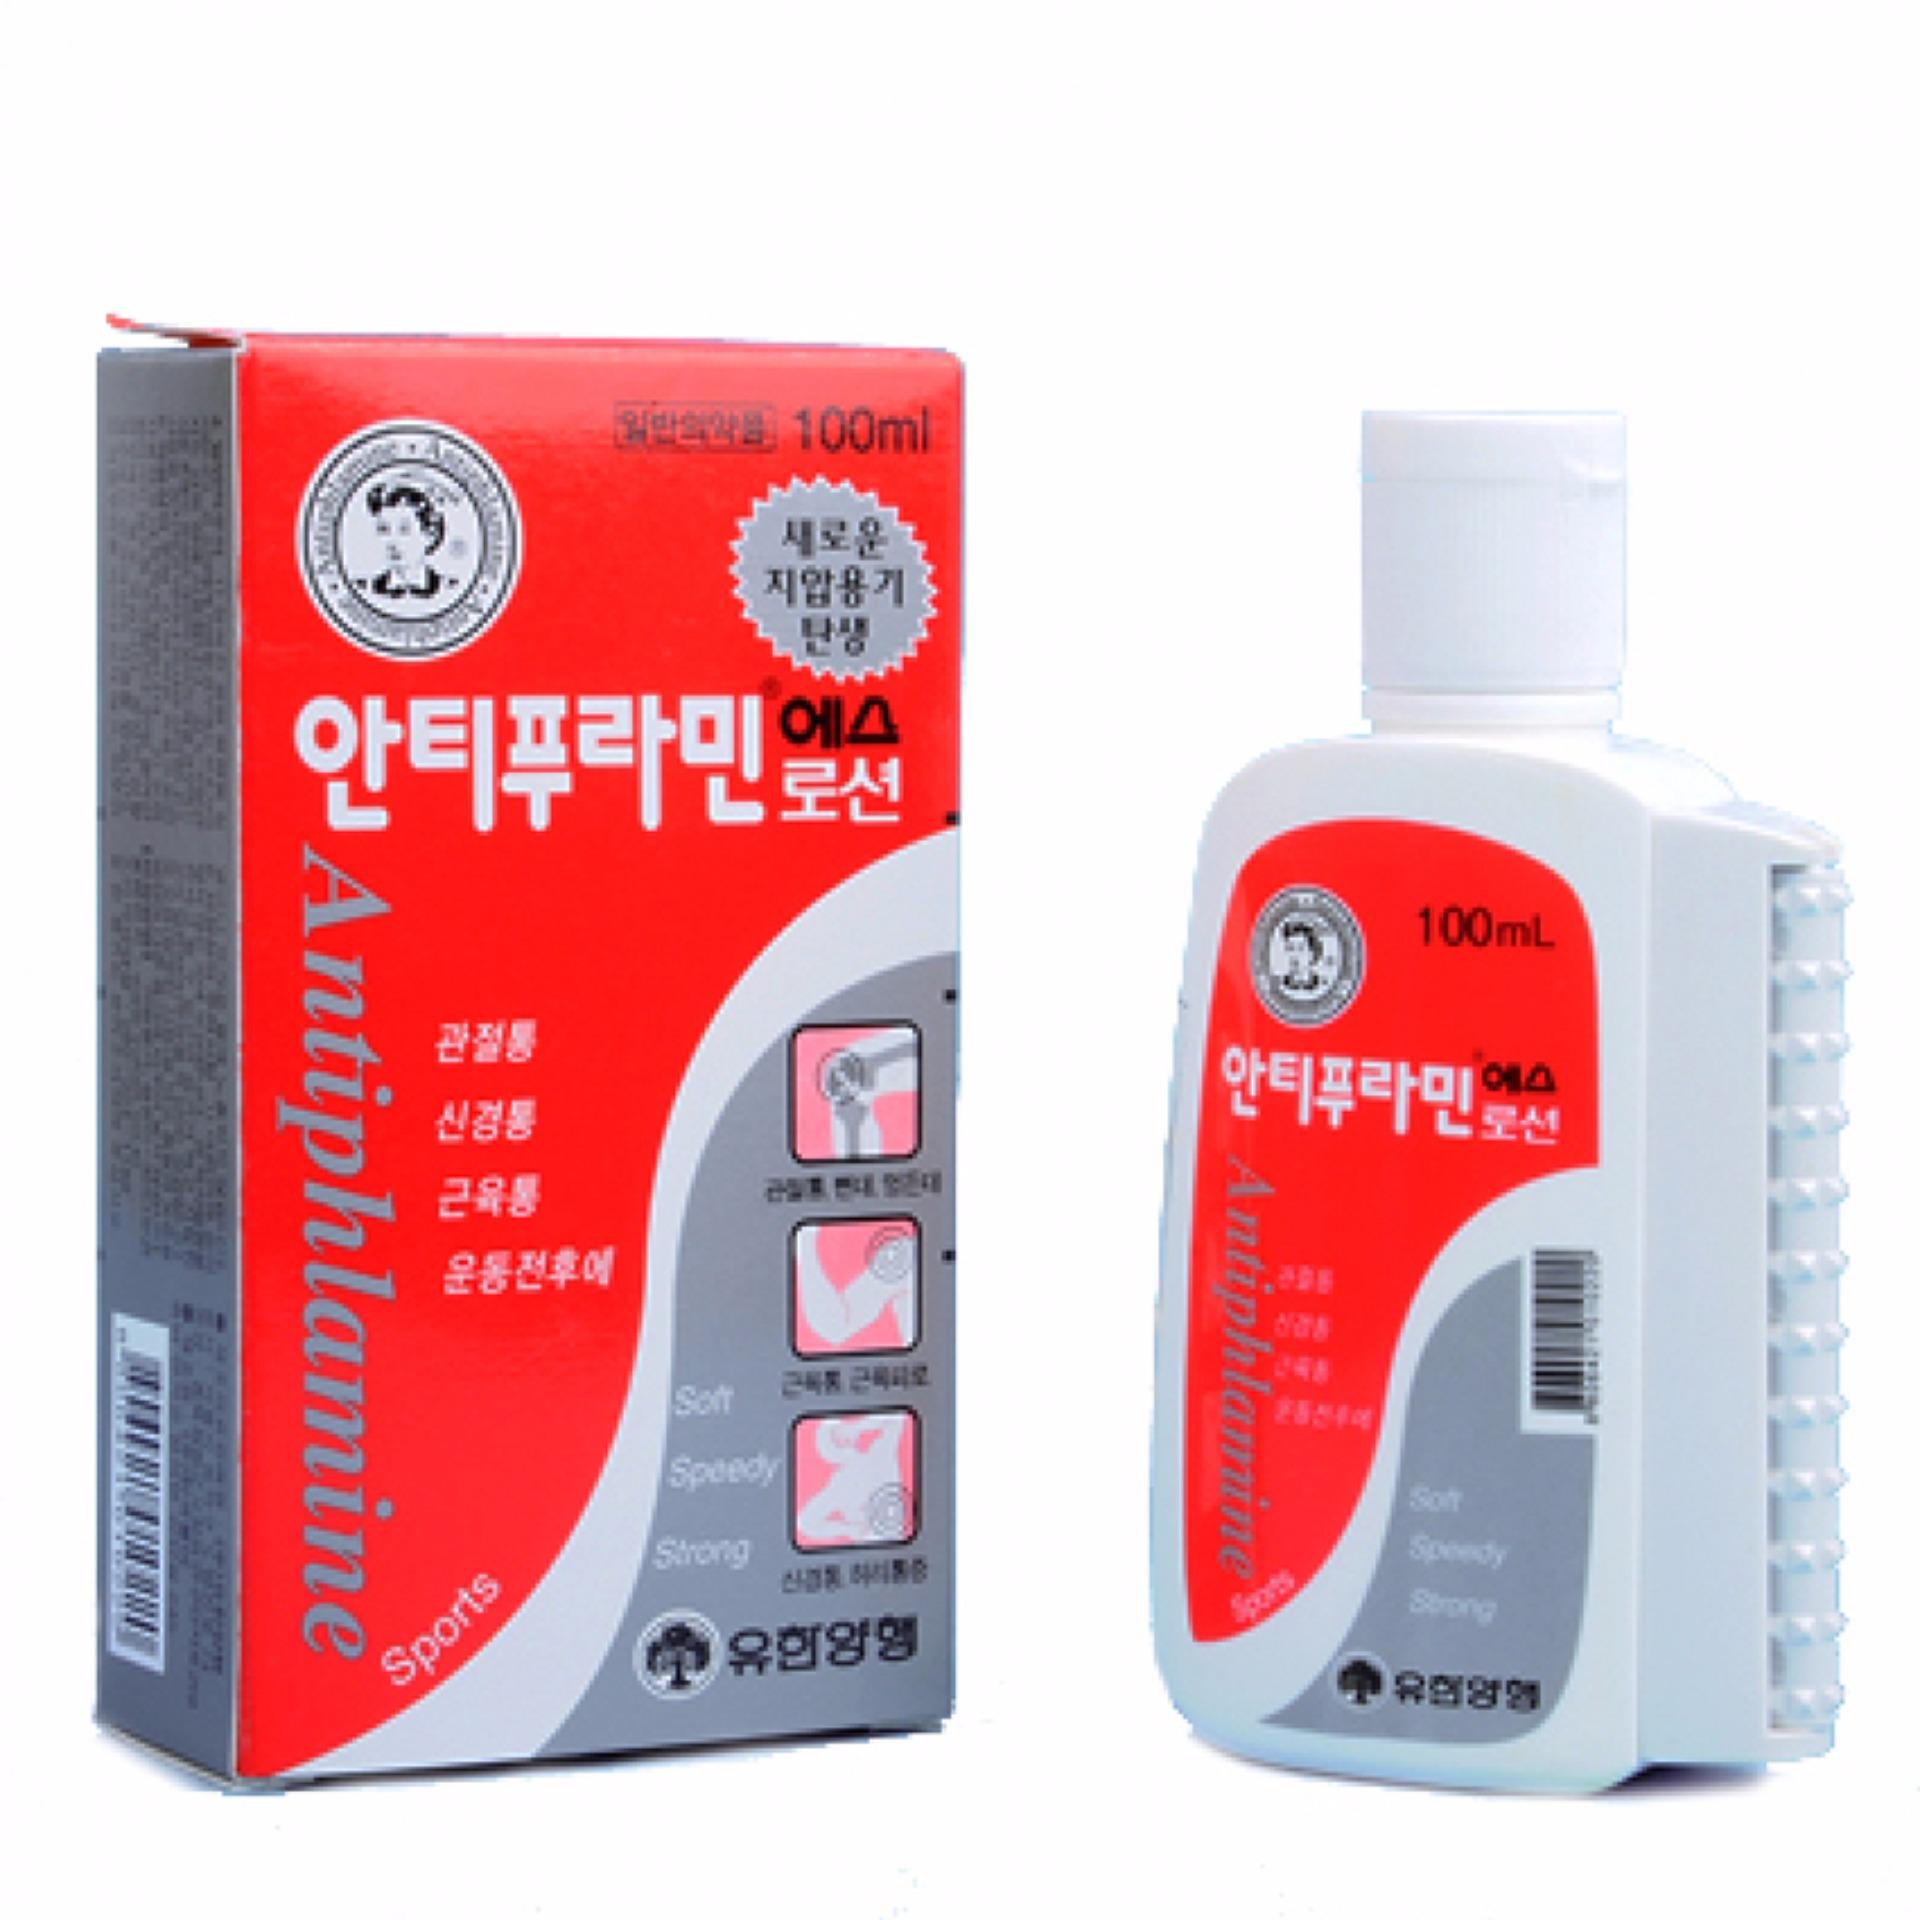 Dầu nóng Hàn Quốc Antiphlamine 100ml giảm đau cơ, xương khớp với mọi nguyên nhân